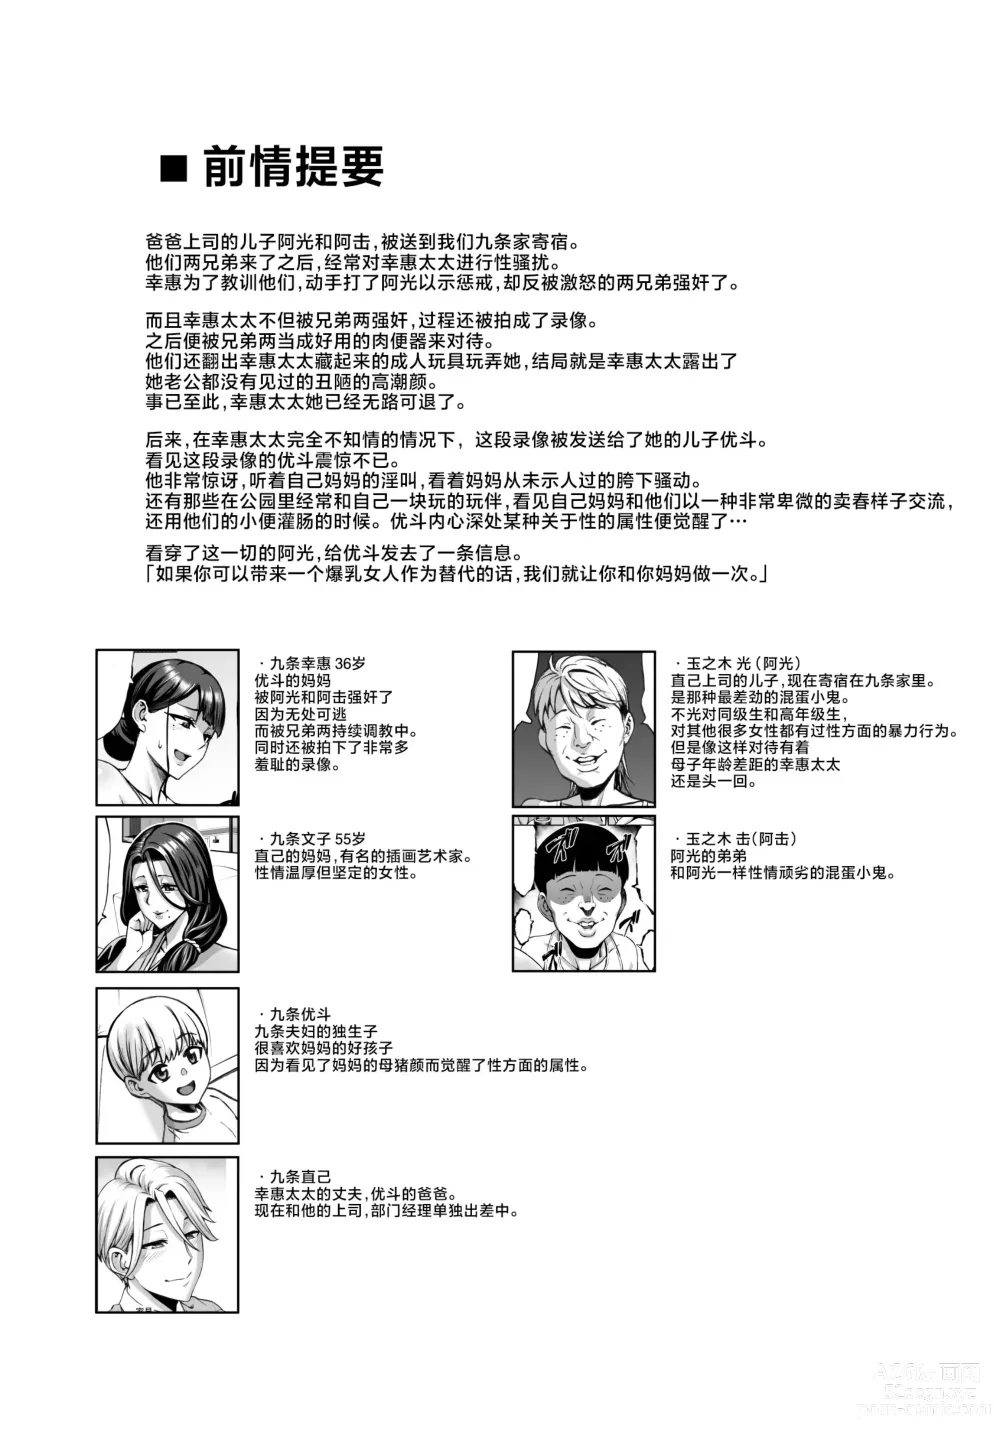 Page 2 of doujinshi お前の母ちゃんイクときの顔すげぇブスだぞｗ2 + おまけ